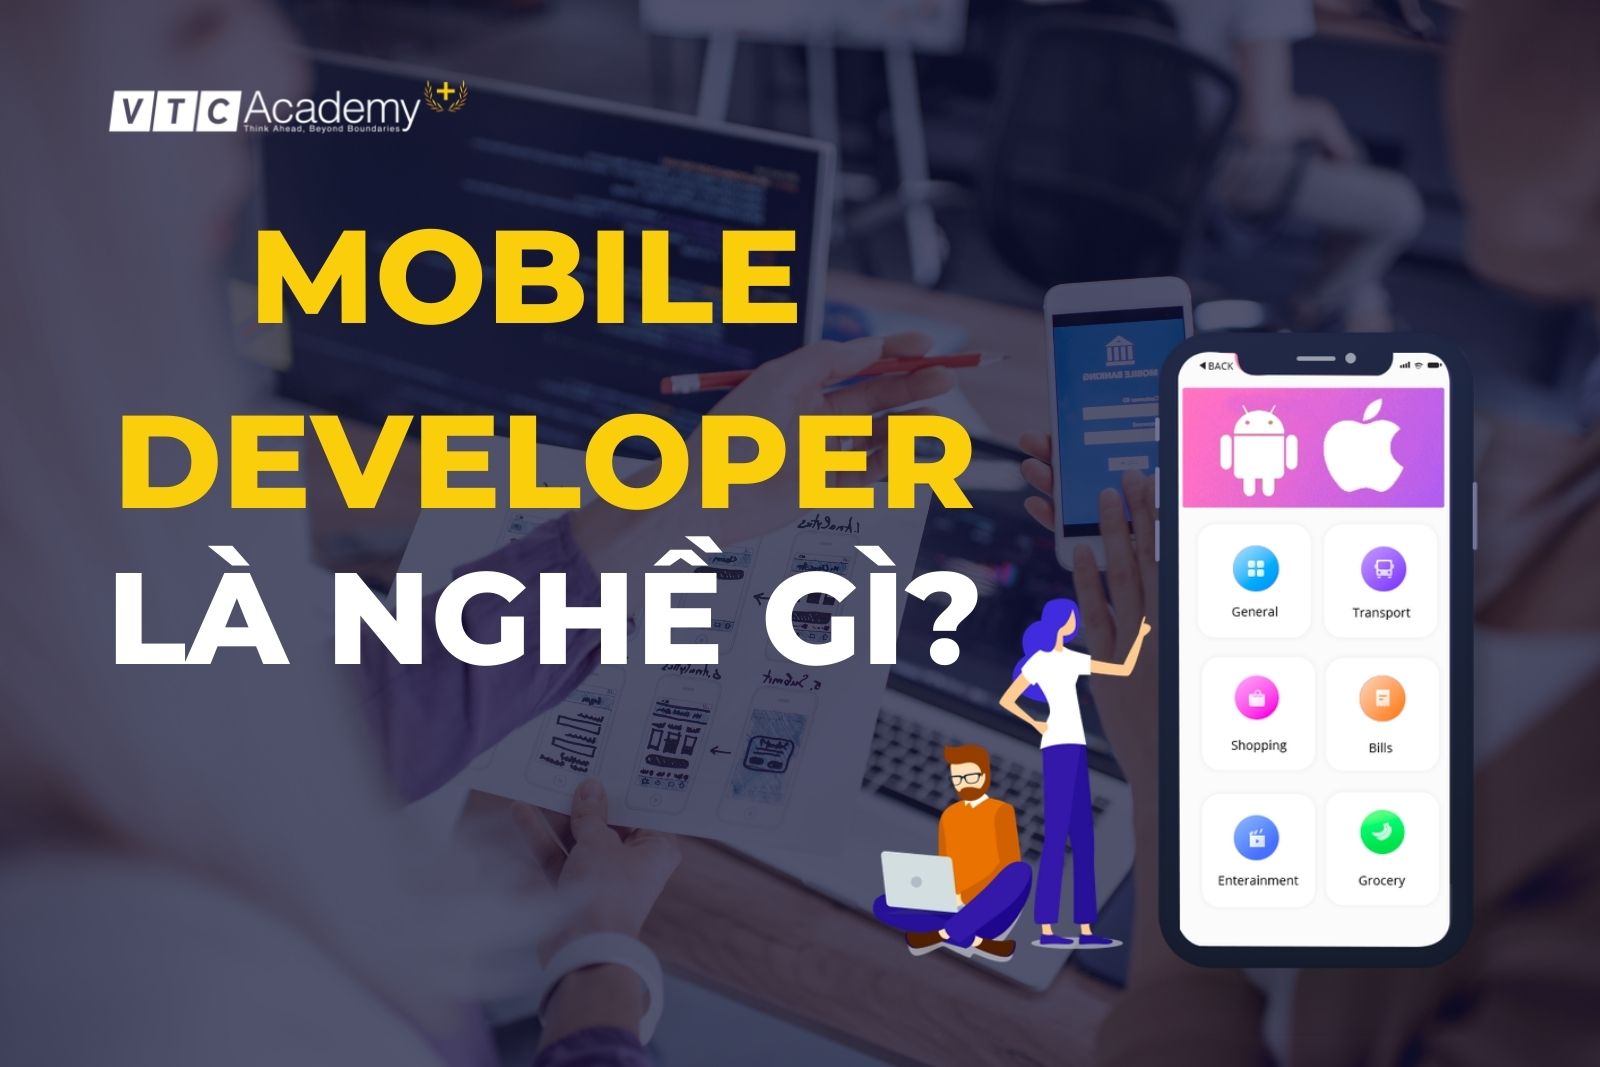 Mobile Developer là gì? Nghề “nghìn đô” cho giới trẻ